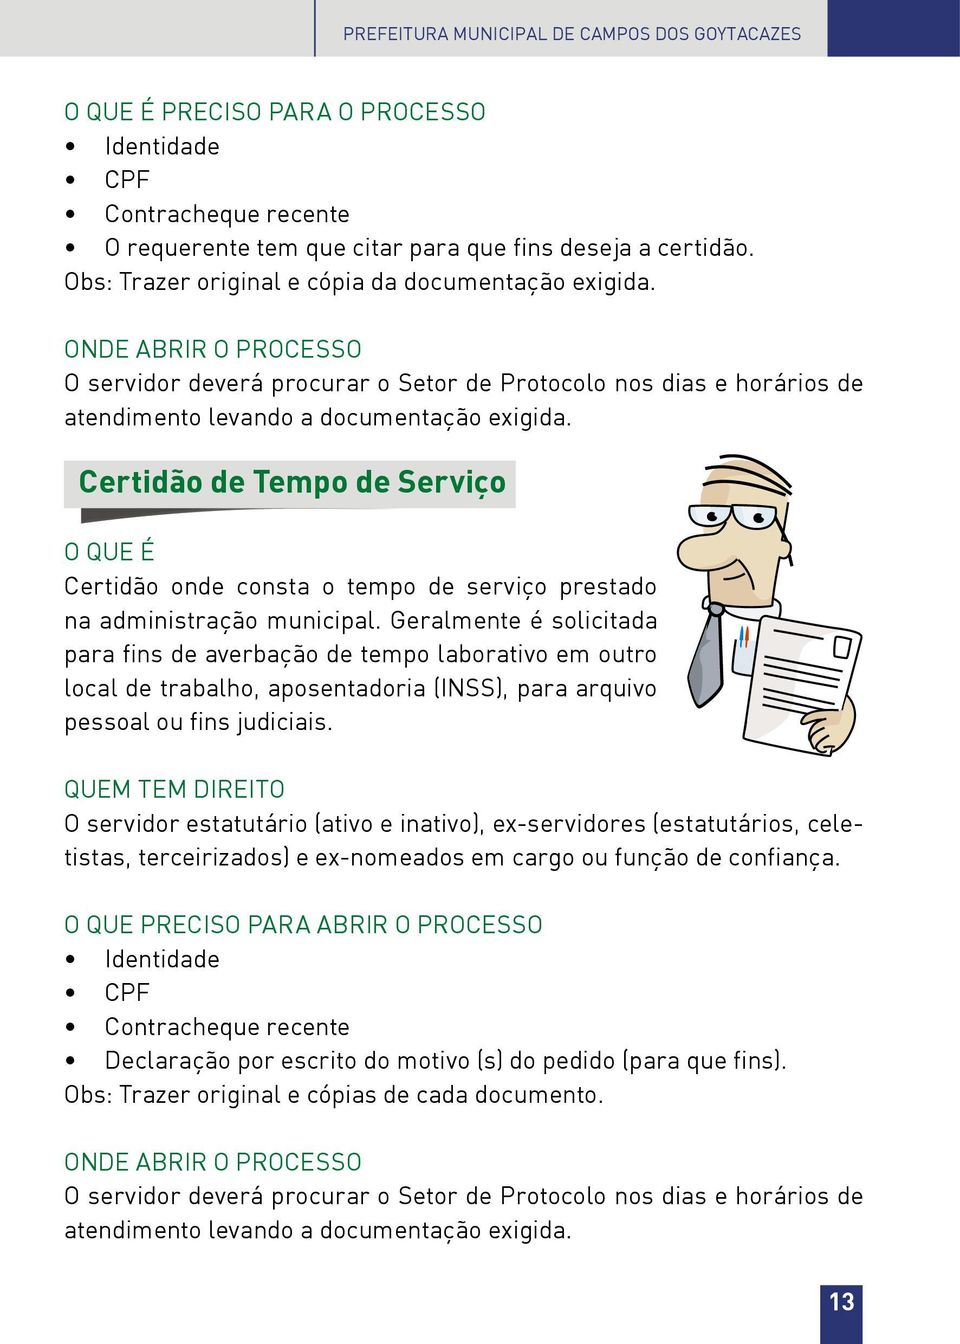 Certidão de Tempo de Serviço Certidão onde consta o tempo de serviço prestado na administração municipal.